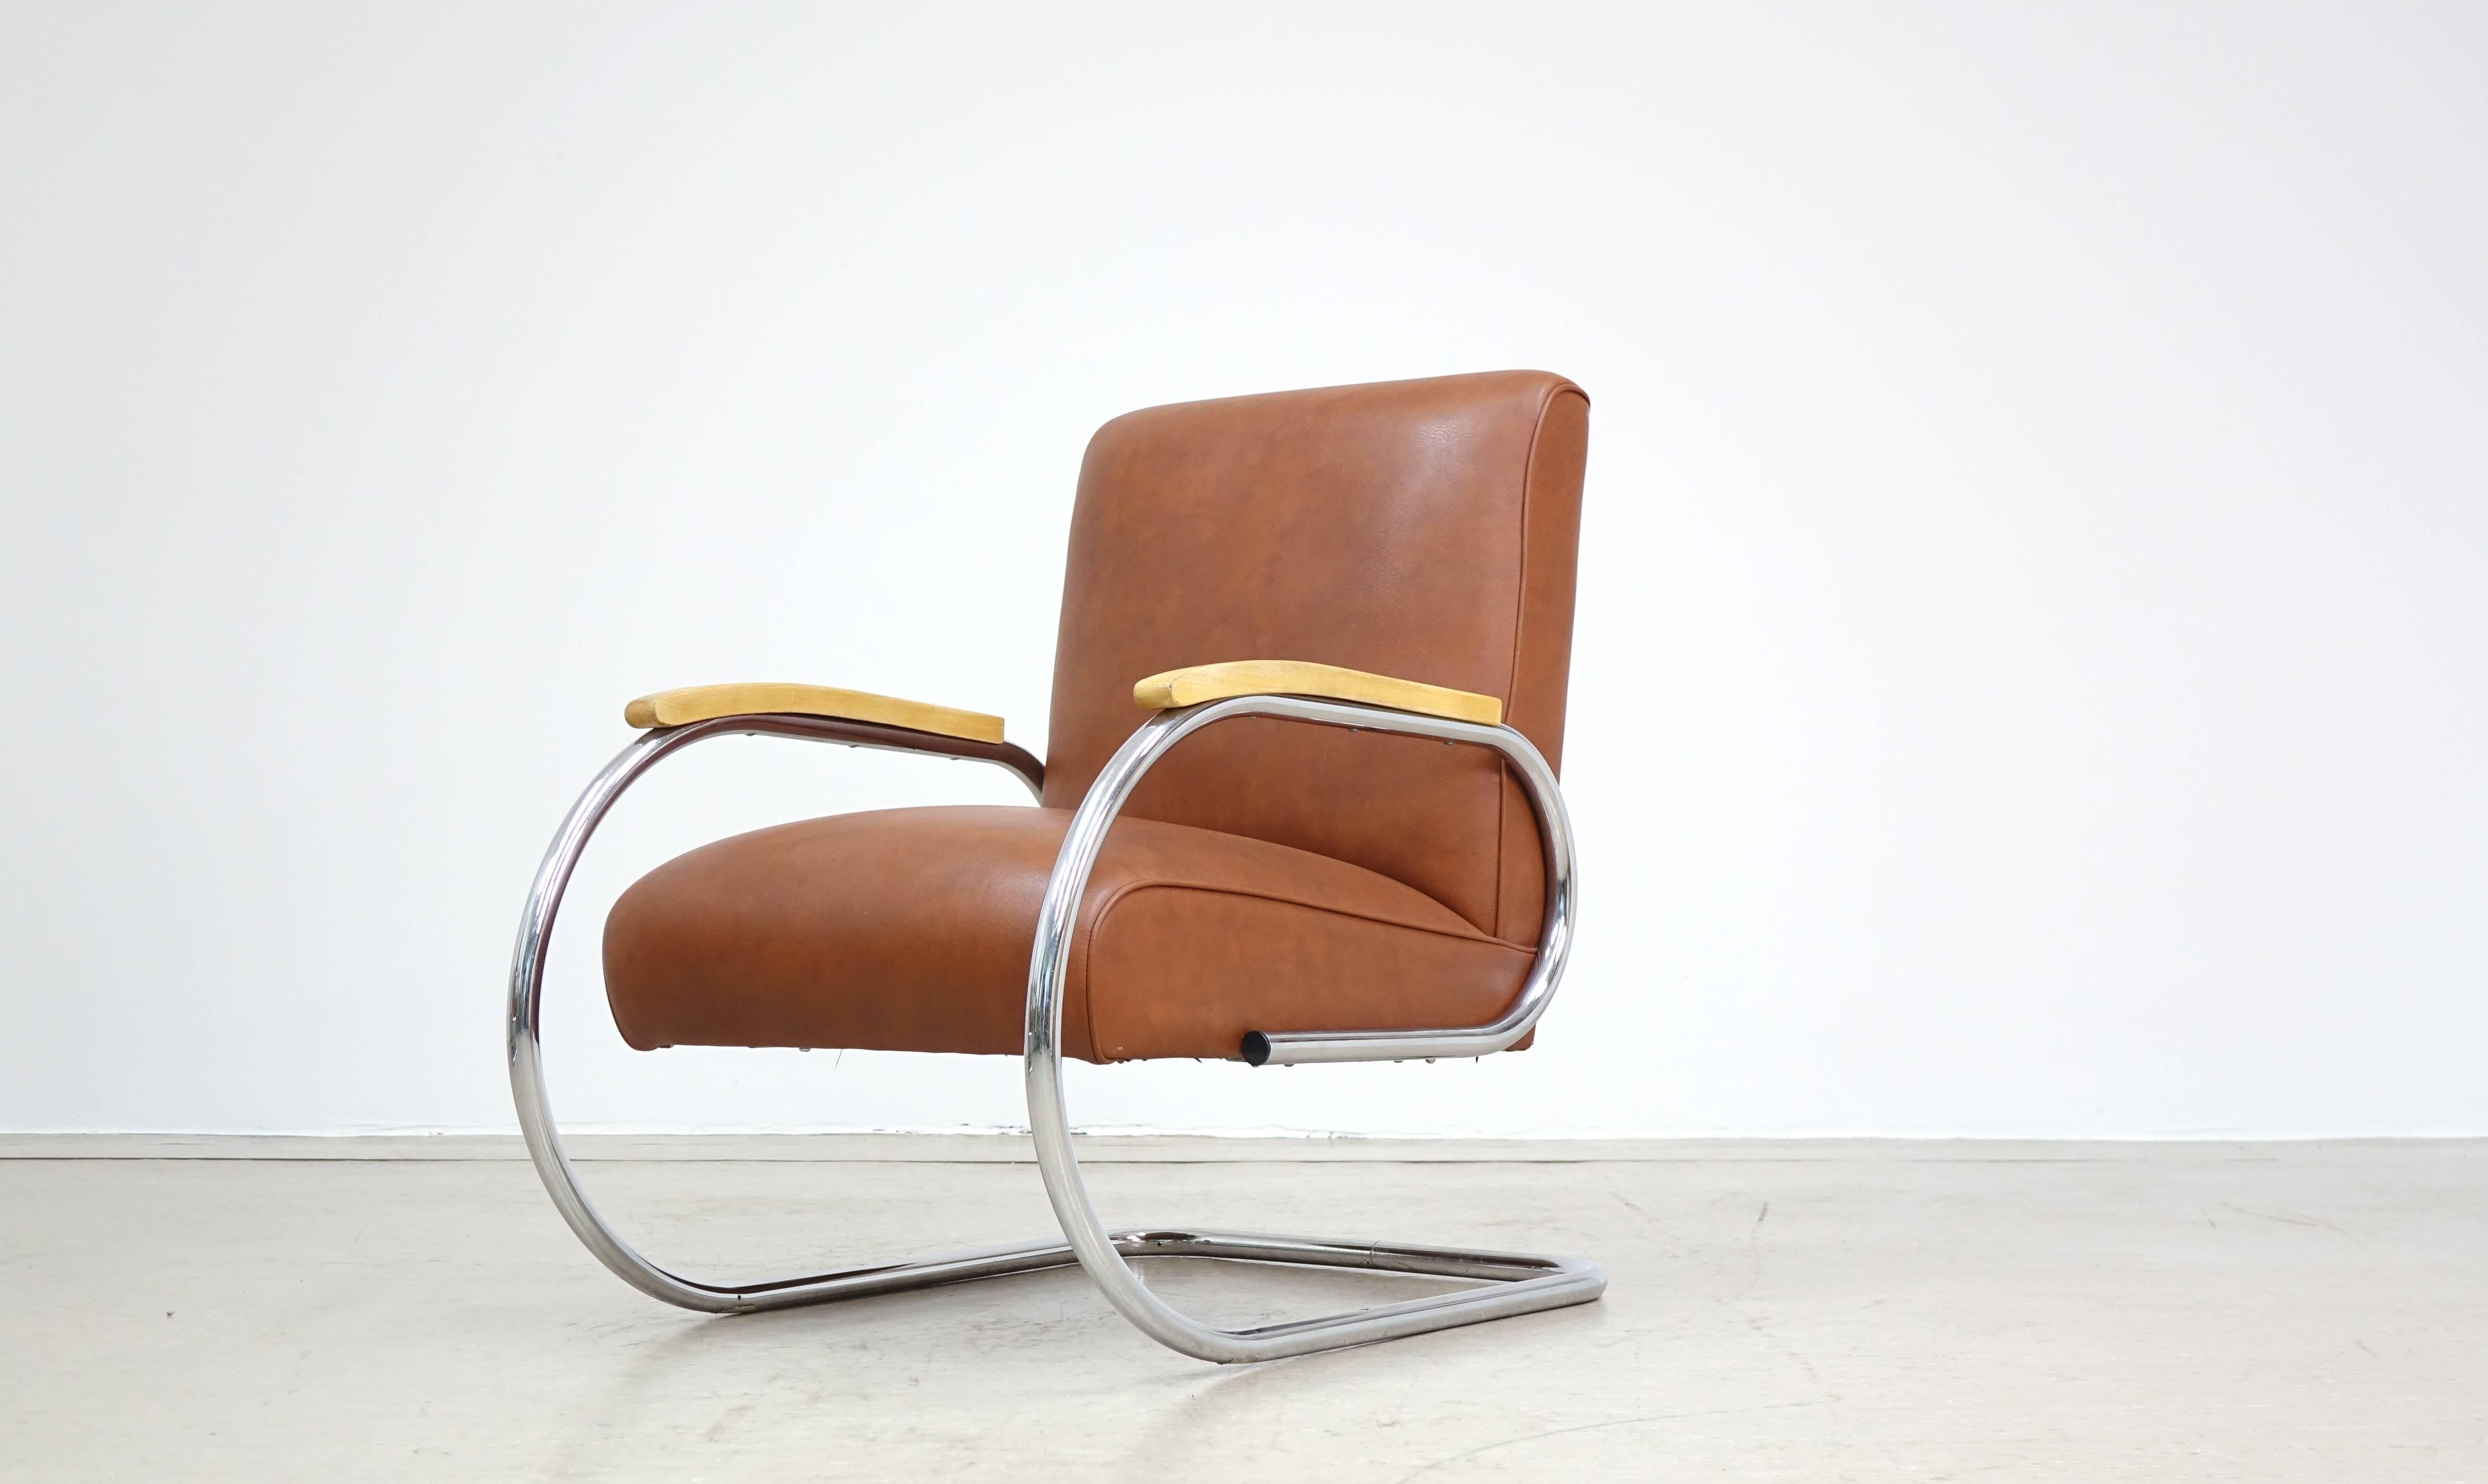 Belge Tubax Easy Chair Bauhaus 1920 Steel Tube Lounge Chair Breuer Art Deco